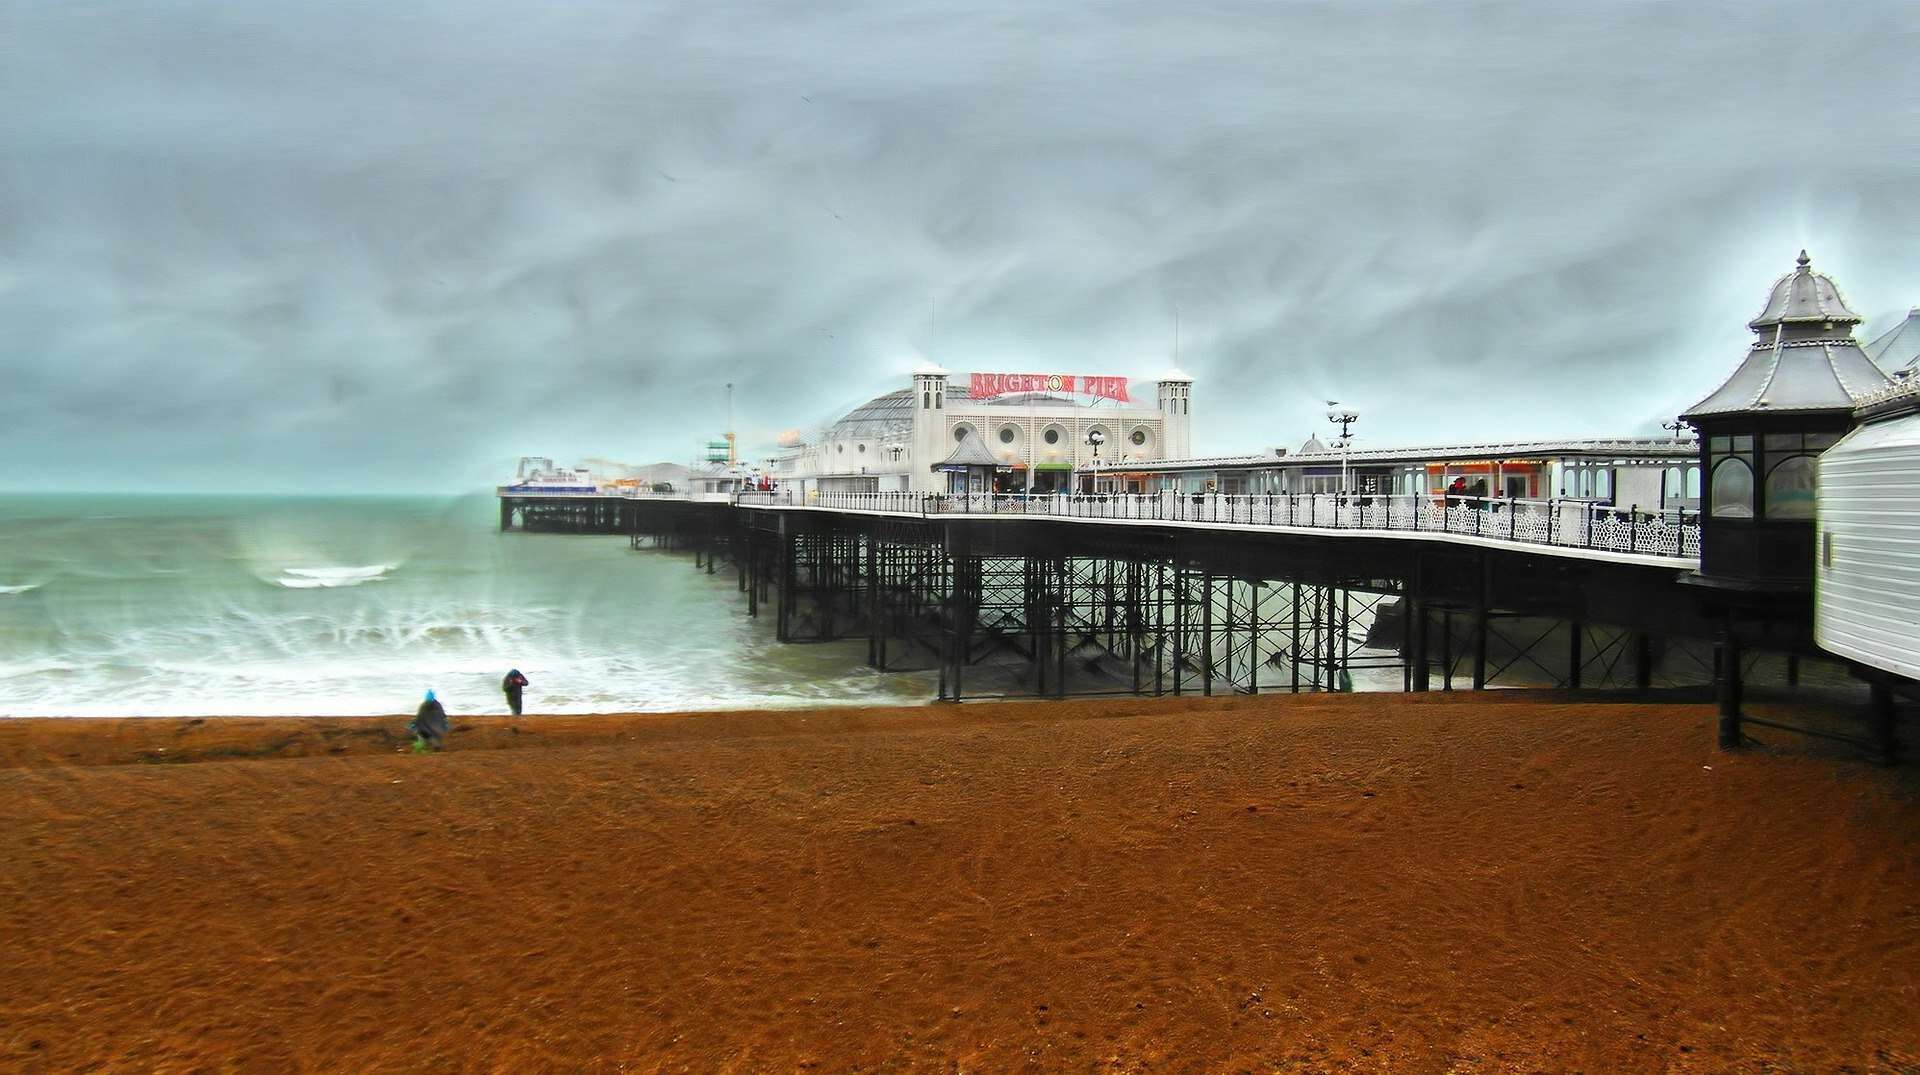 Brighton pier in England